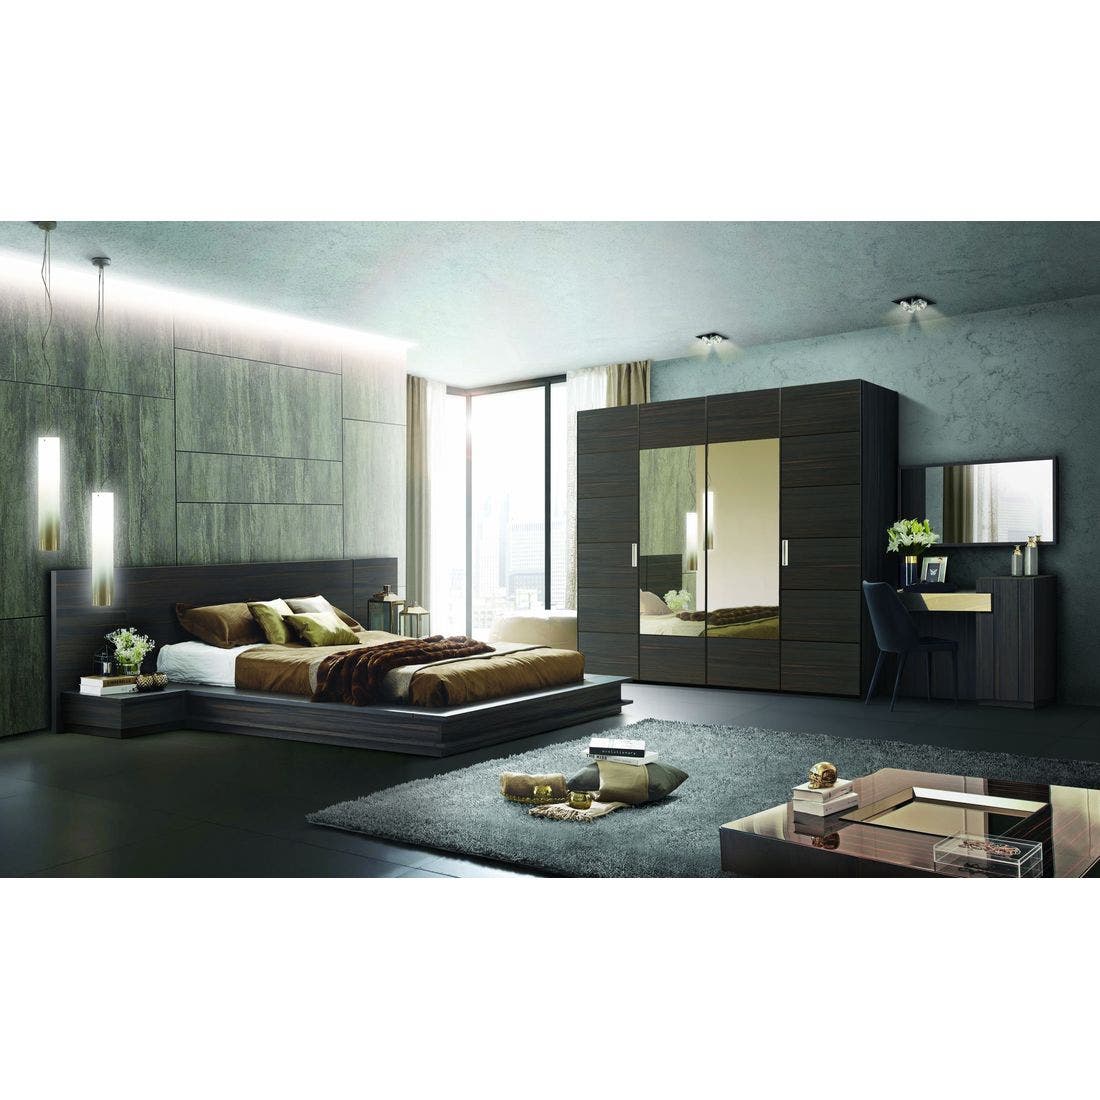 ชุดห้องนอน ชุดห้องนอนขนาด 5 ฟุต รุ่น Zen สีสีเข้มลายไม้ธรรมชาติ-SB Design Square